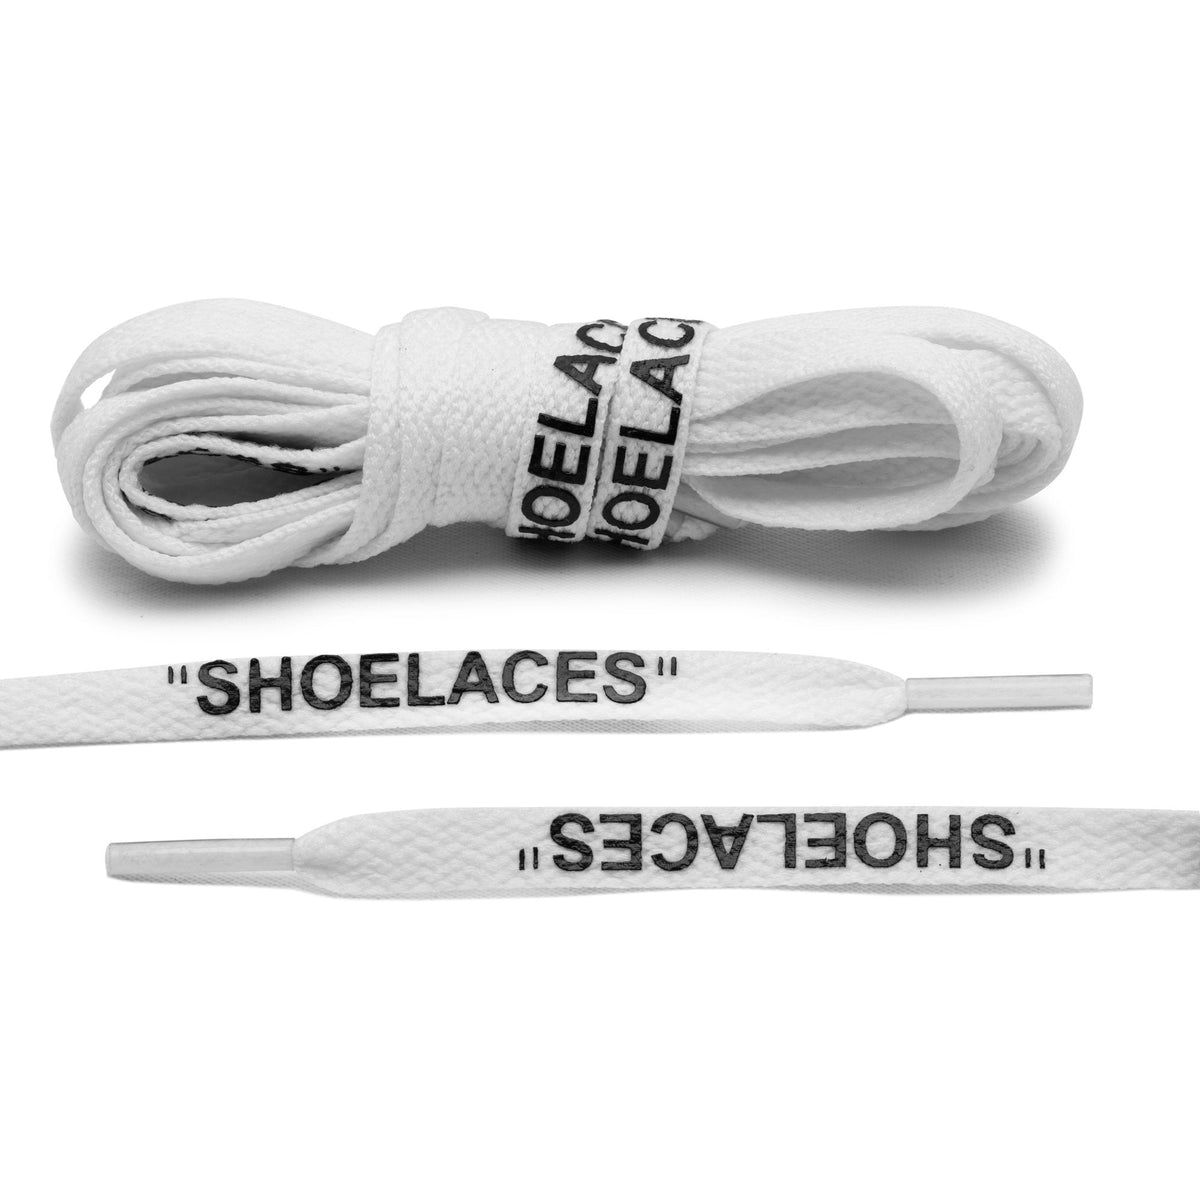 White Off-White Style "Shoelaces" - HotKokosArt